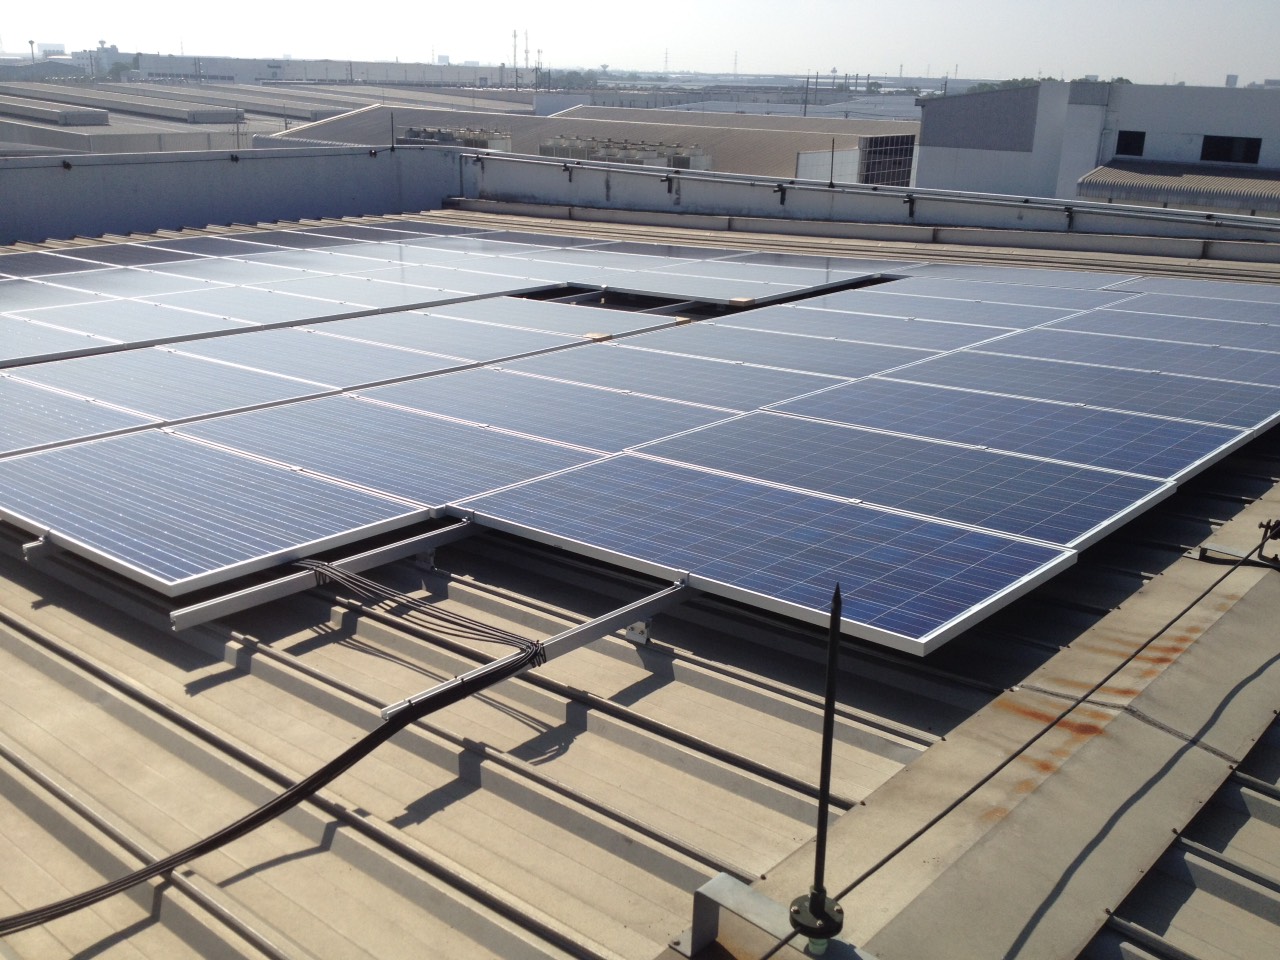 Suportes de montagem de painel solar solução de inclinação ajustável para telhado Suportes de montagem de painel solar solução de inclinação ajustável para telhado
